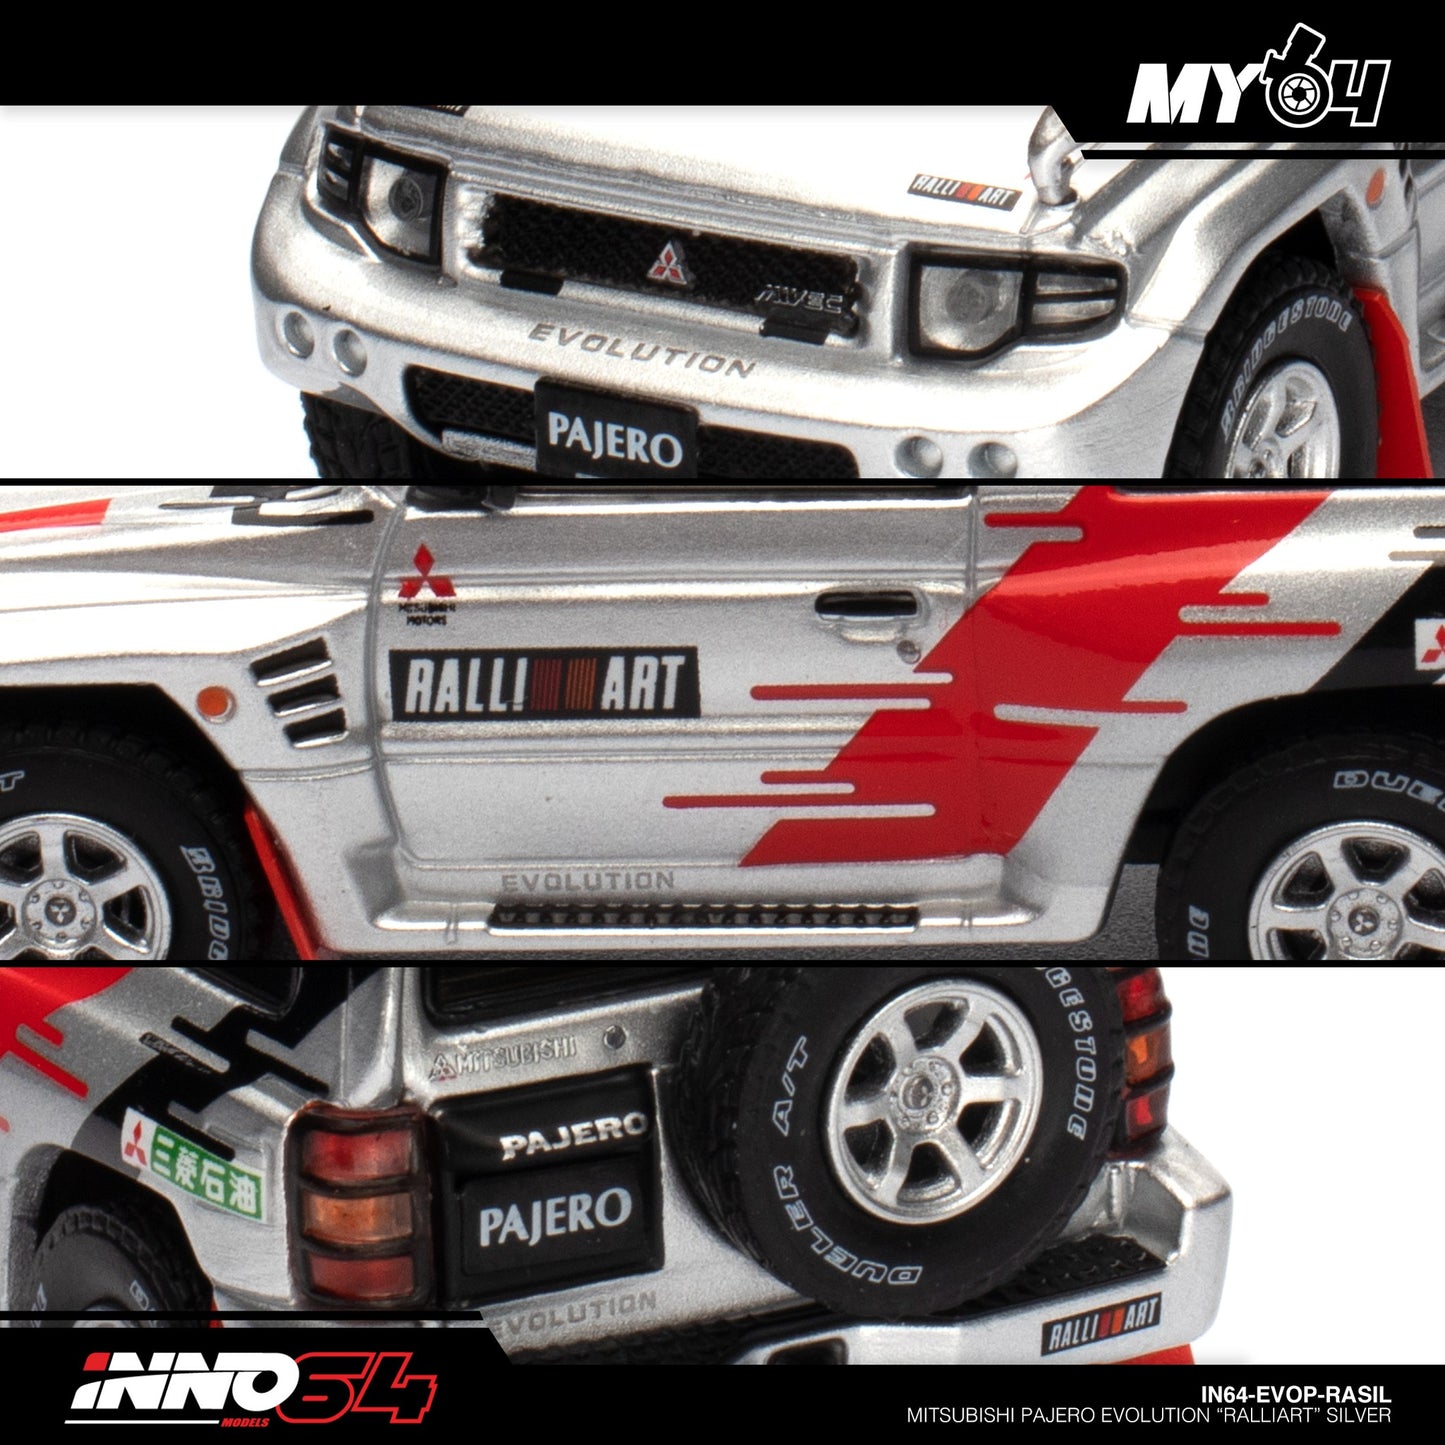 [INNO64] Mitsubishi Pajero Evolution "RALLIART" - Silver